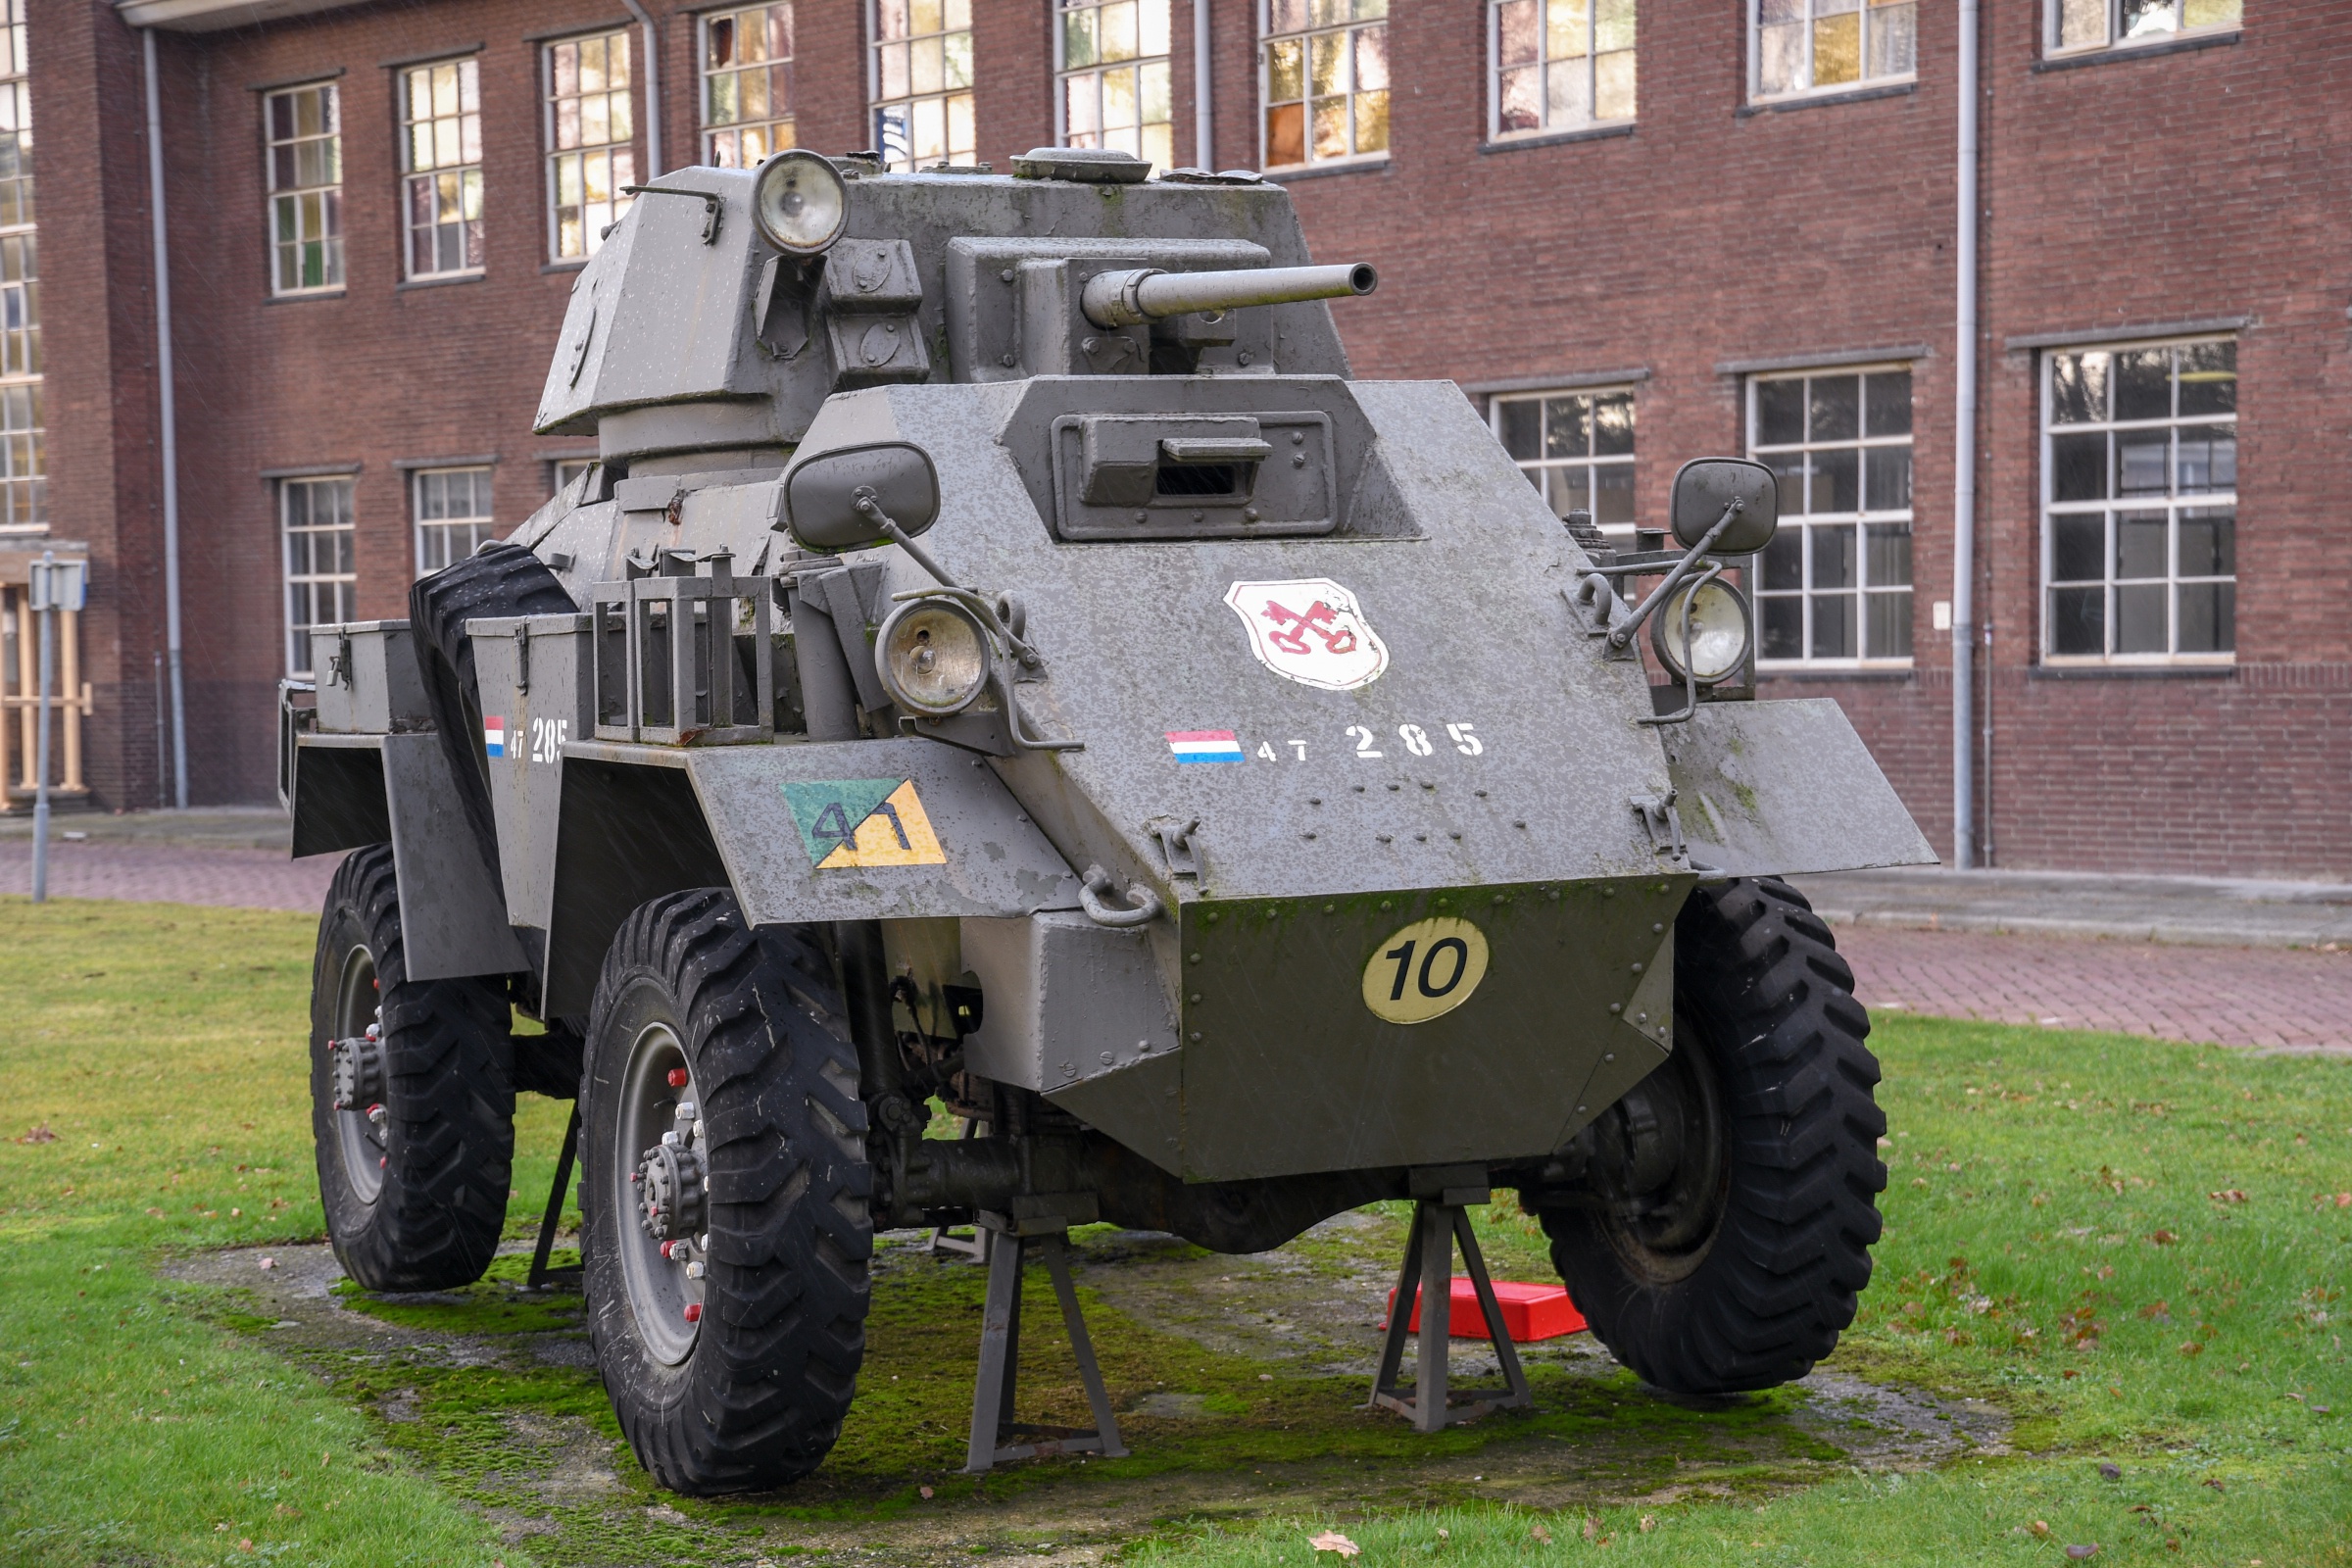 Humber Mk IV